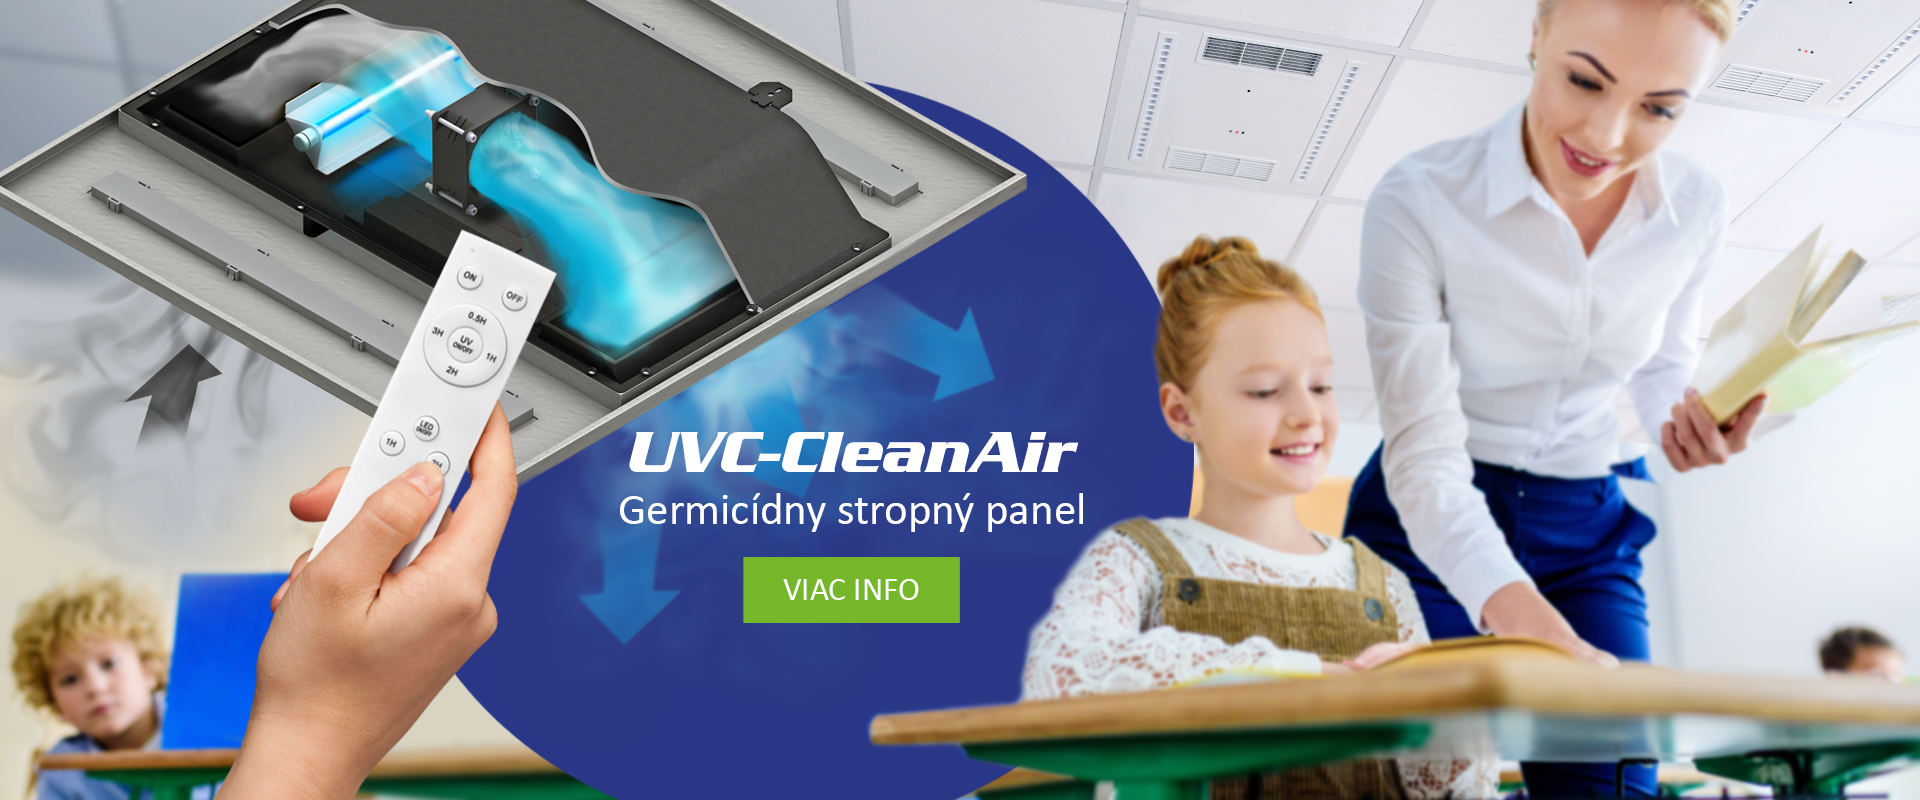 UVC-CleanAir; stropný germicídny čistič vzduchu